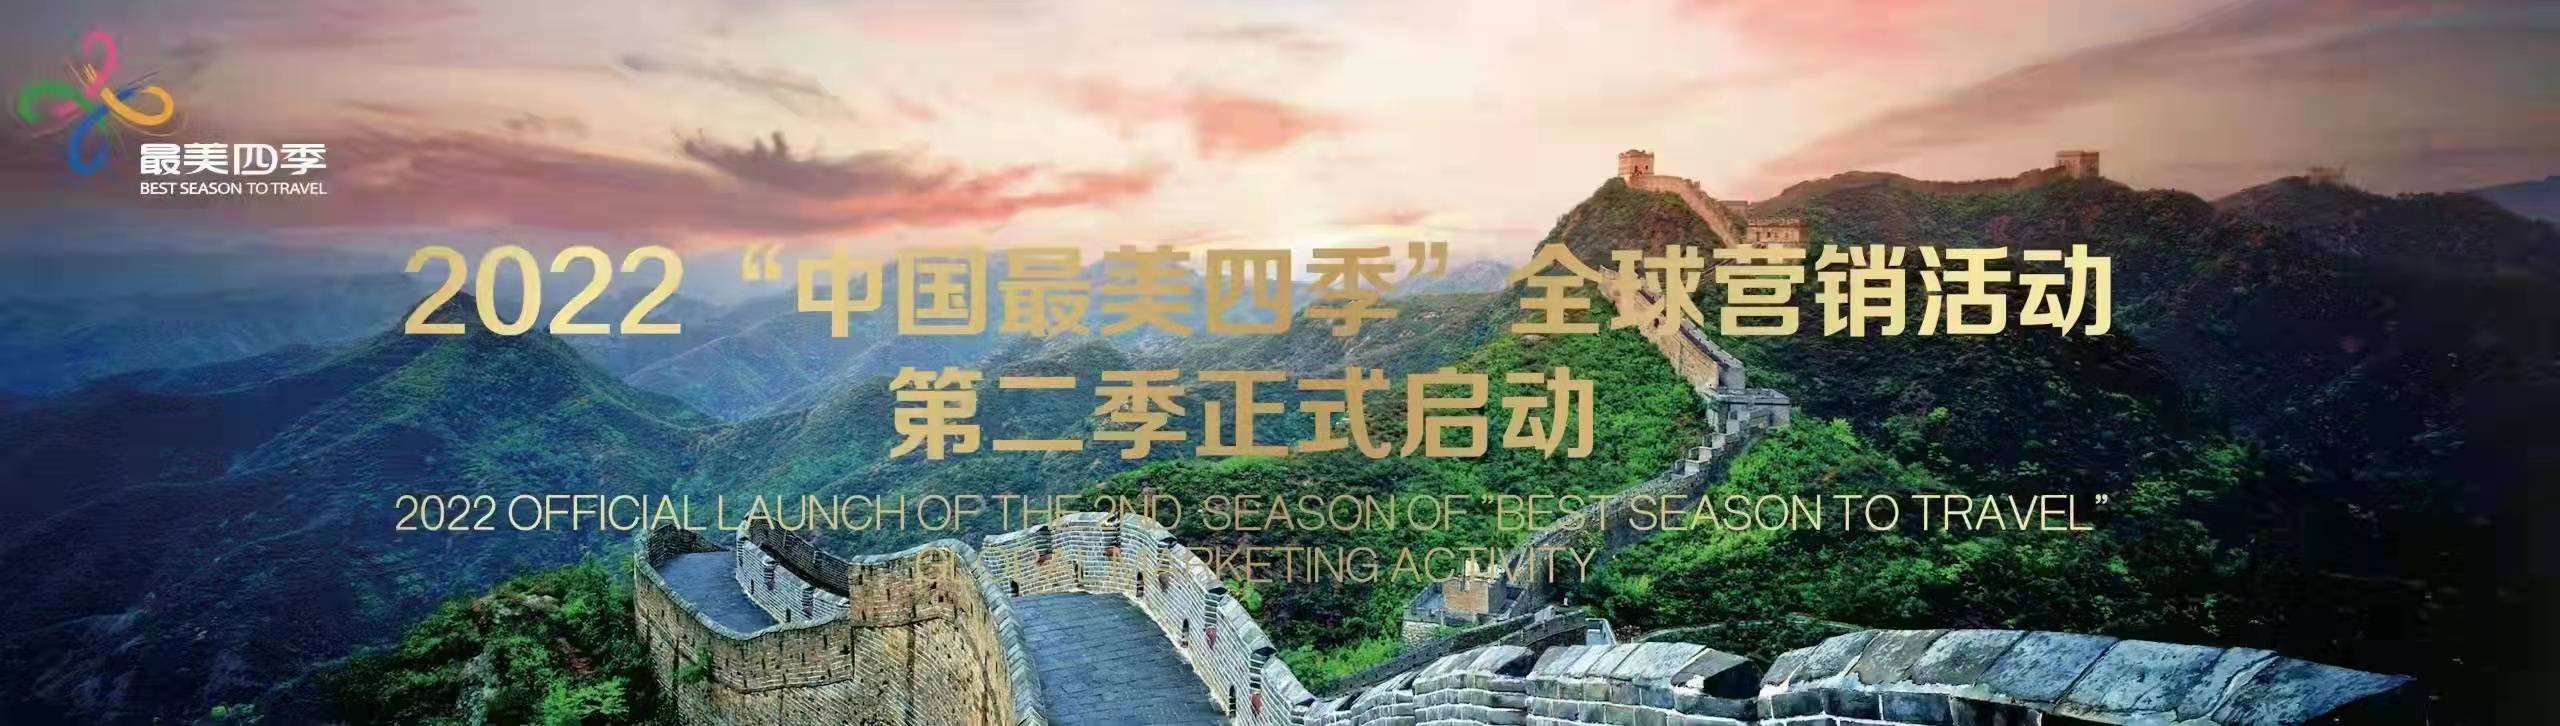 宝鸡市|宝鸡市文化和旅游局荣获2021“中国最美四季”优秀组织单位奖